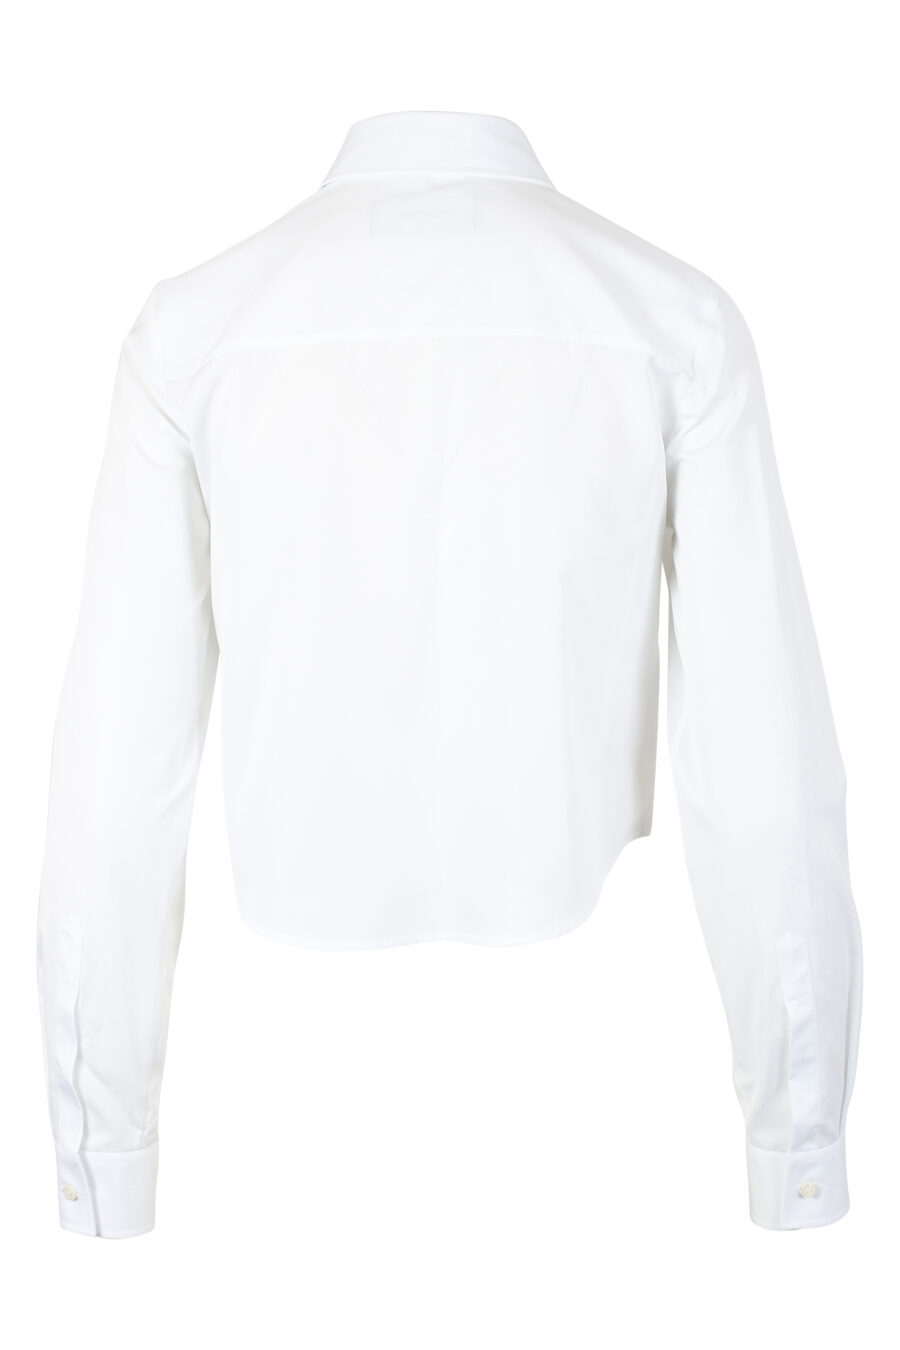 Kurzes weißes Hemd mit doppeltem Icon-Mini-Logo - IMG 9794